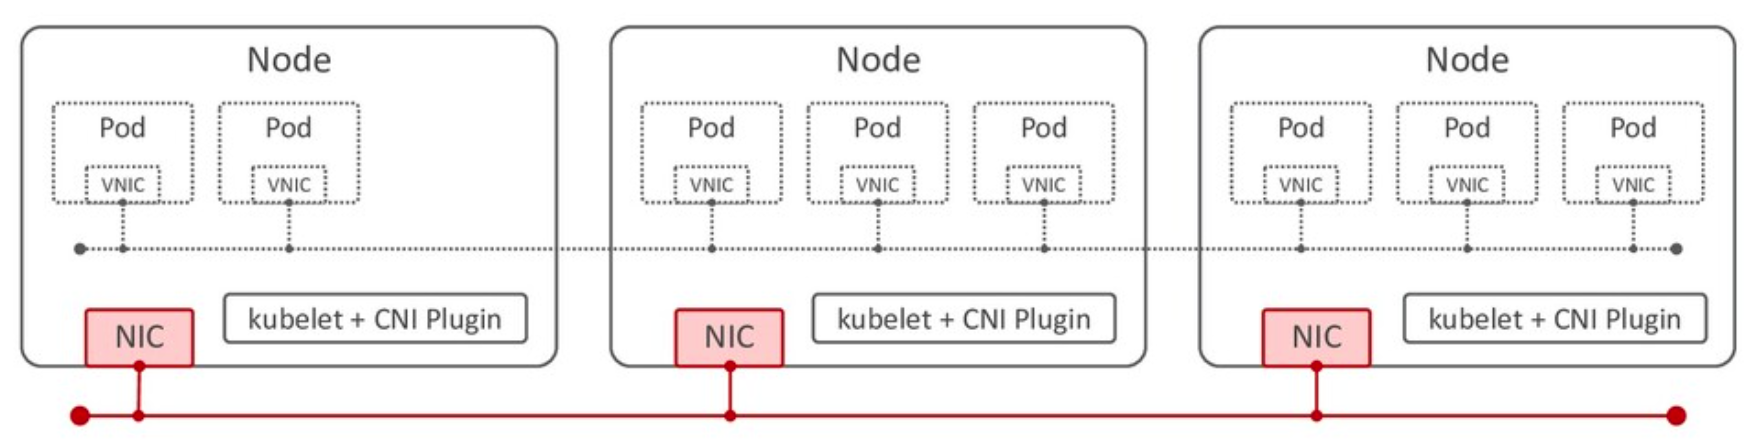 kubernetes_node-network